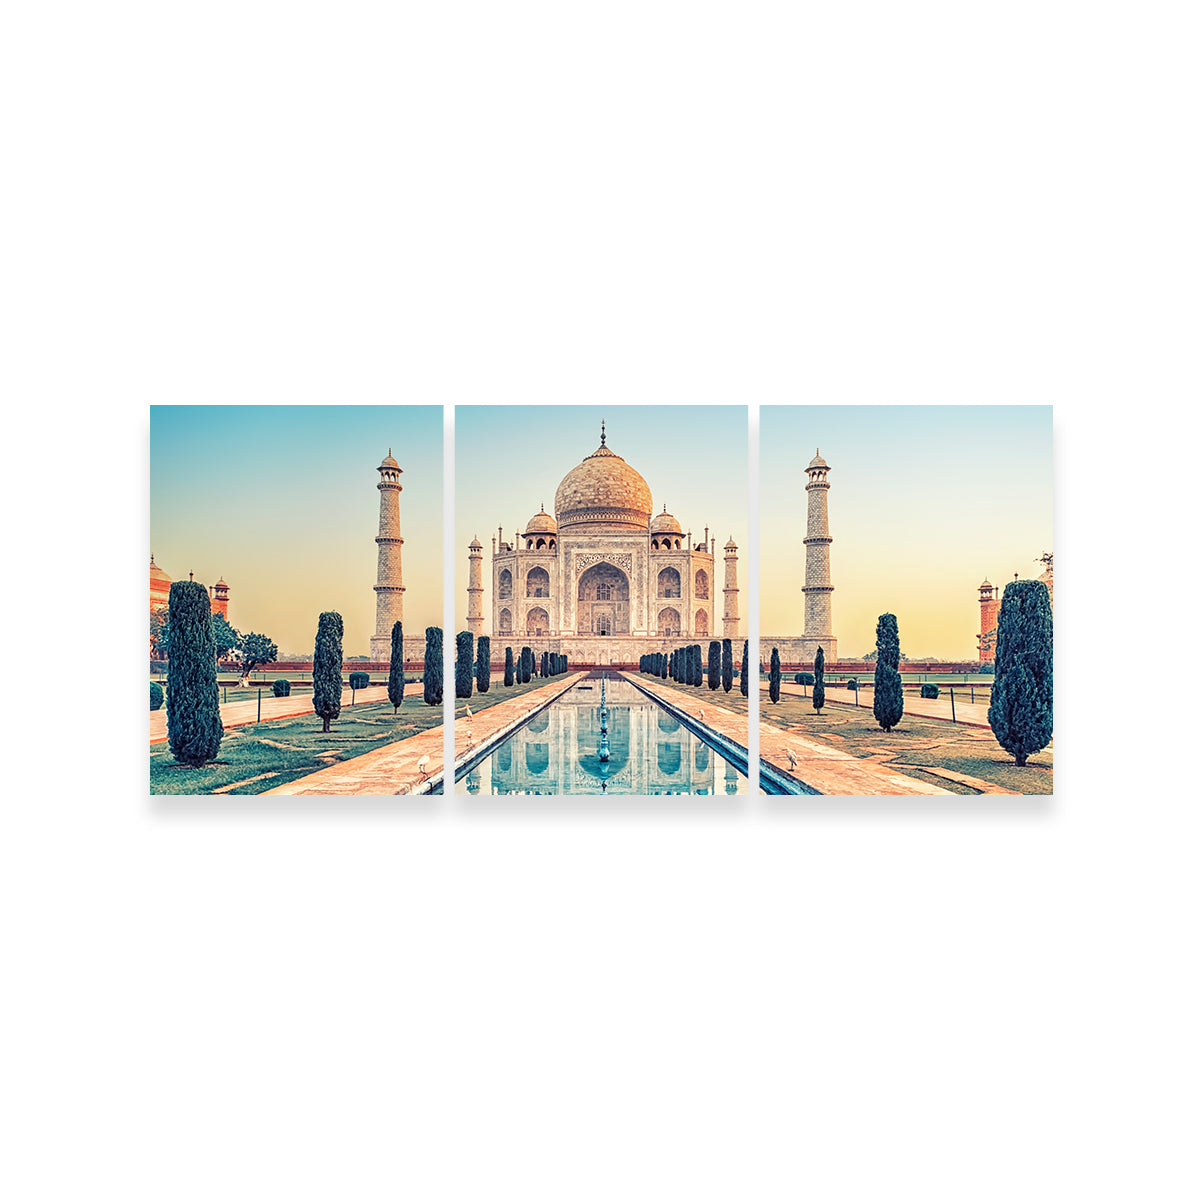 Taj Mahal Mausoleum